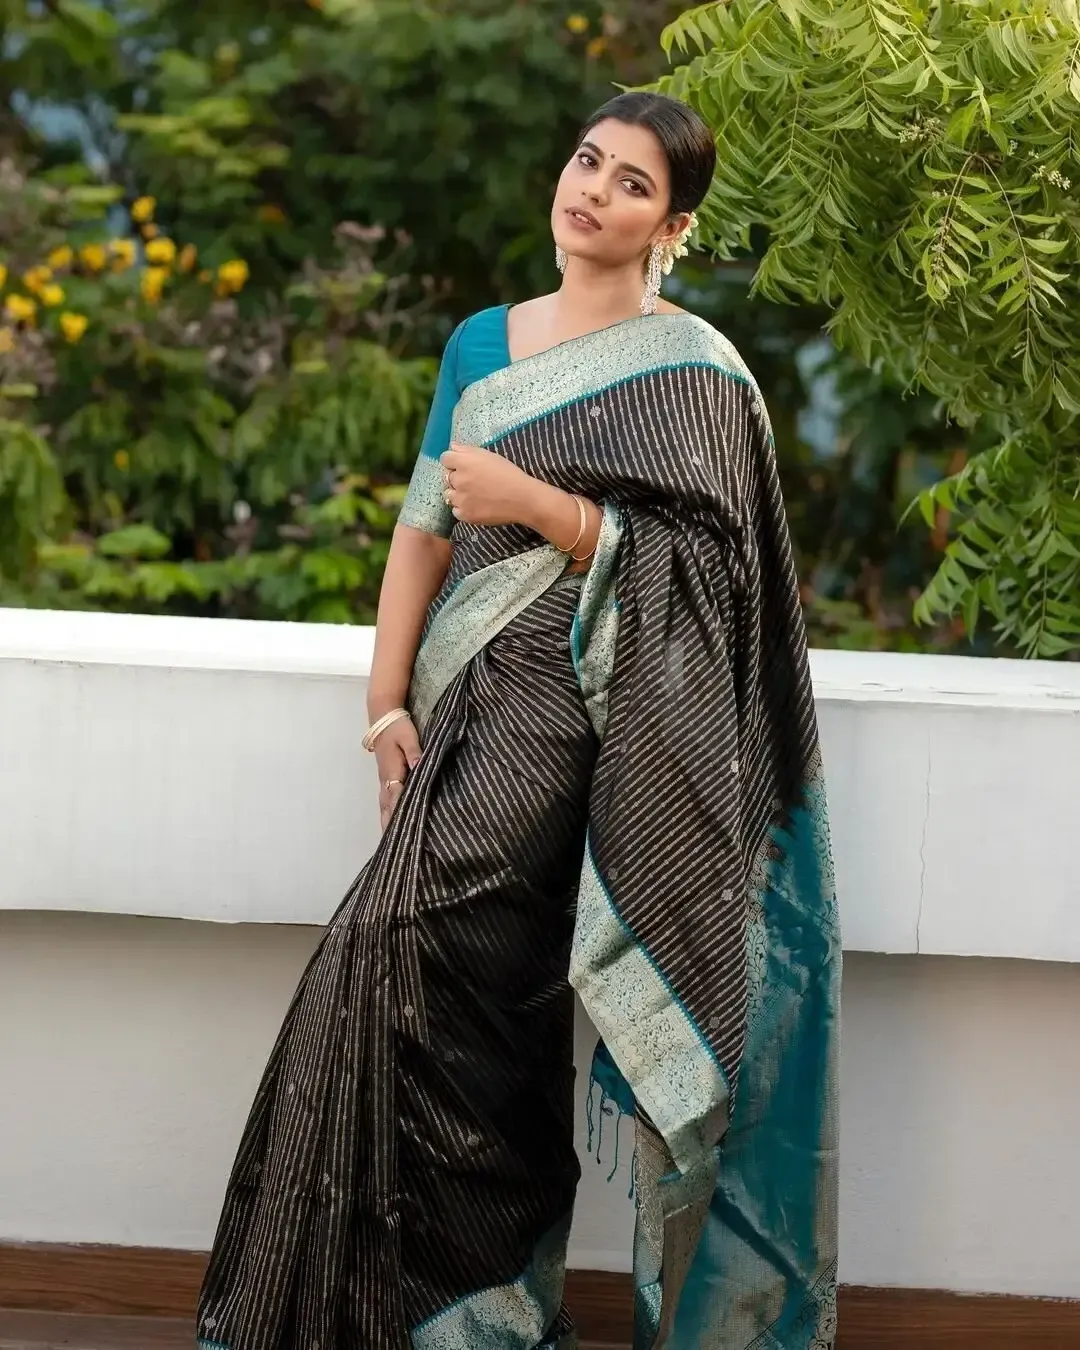 SOUTH INDIAN ACTRESS AISHWARYA RAJESH PHOTOS IN TRADITIONAL BLACK SAREE 3